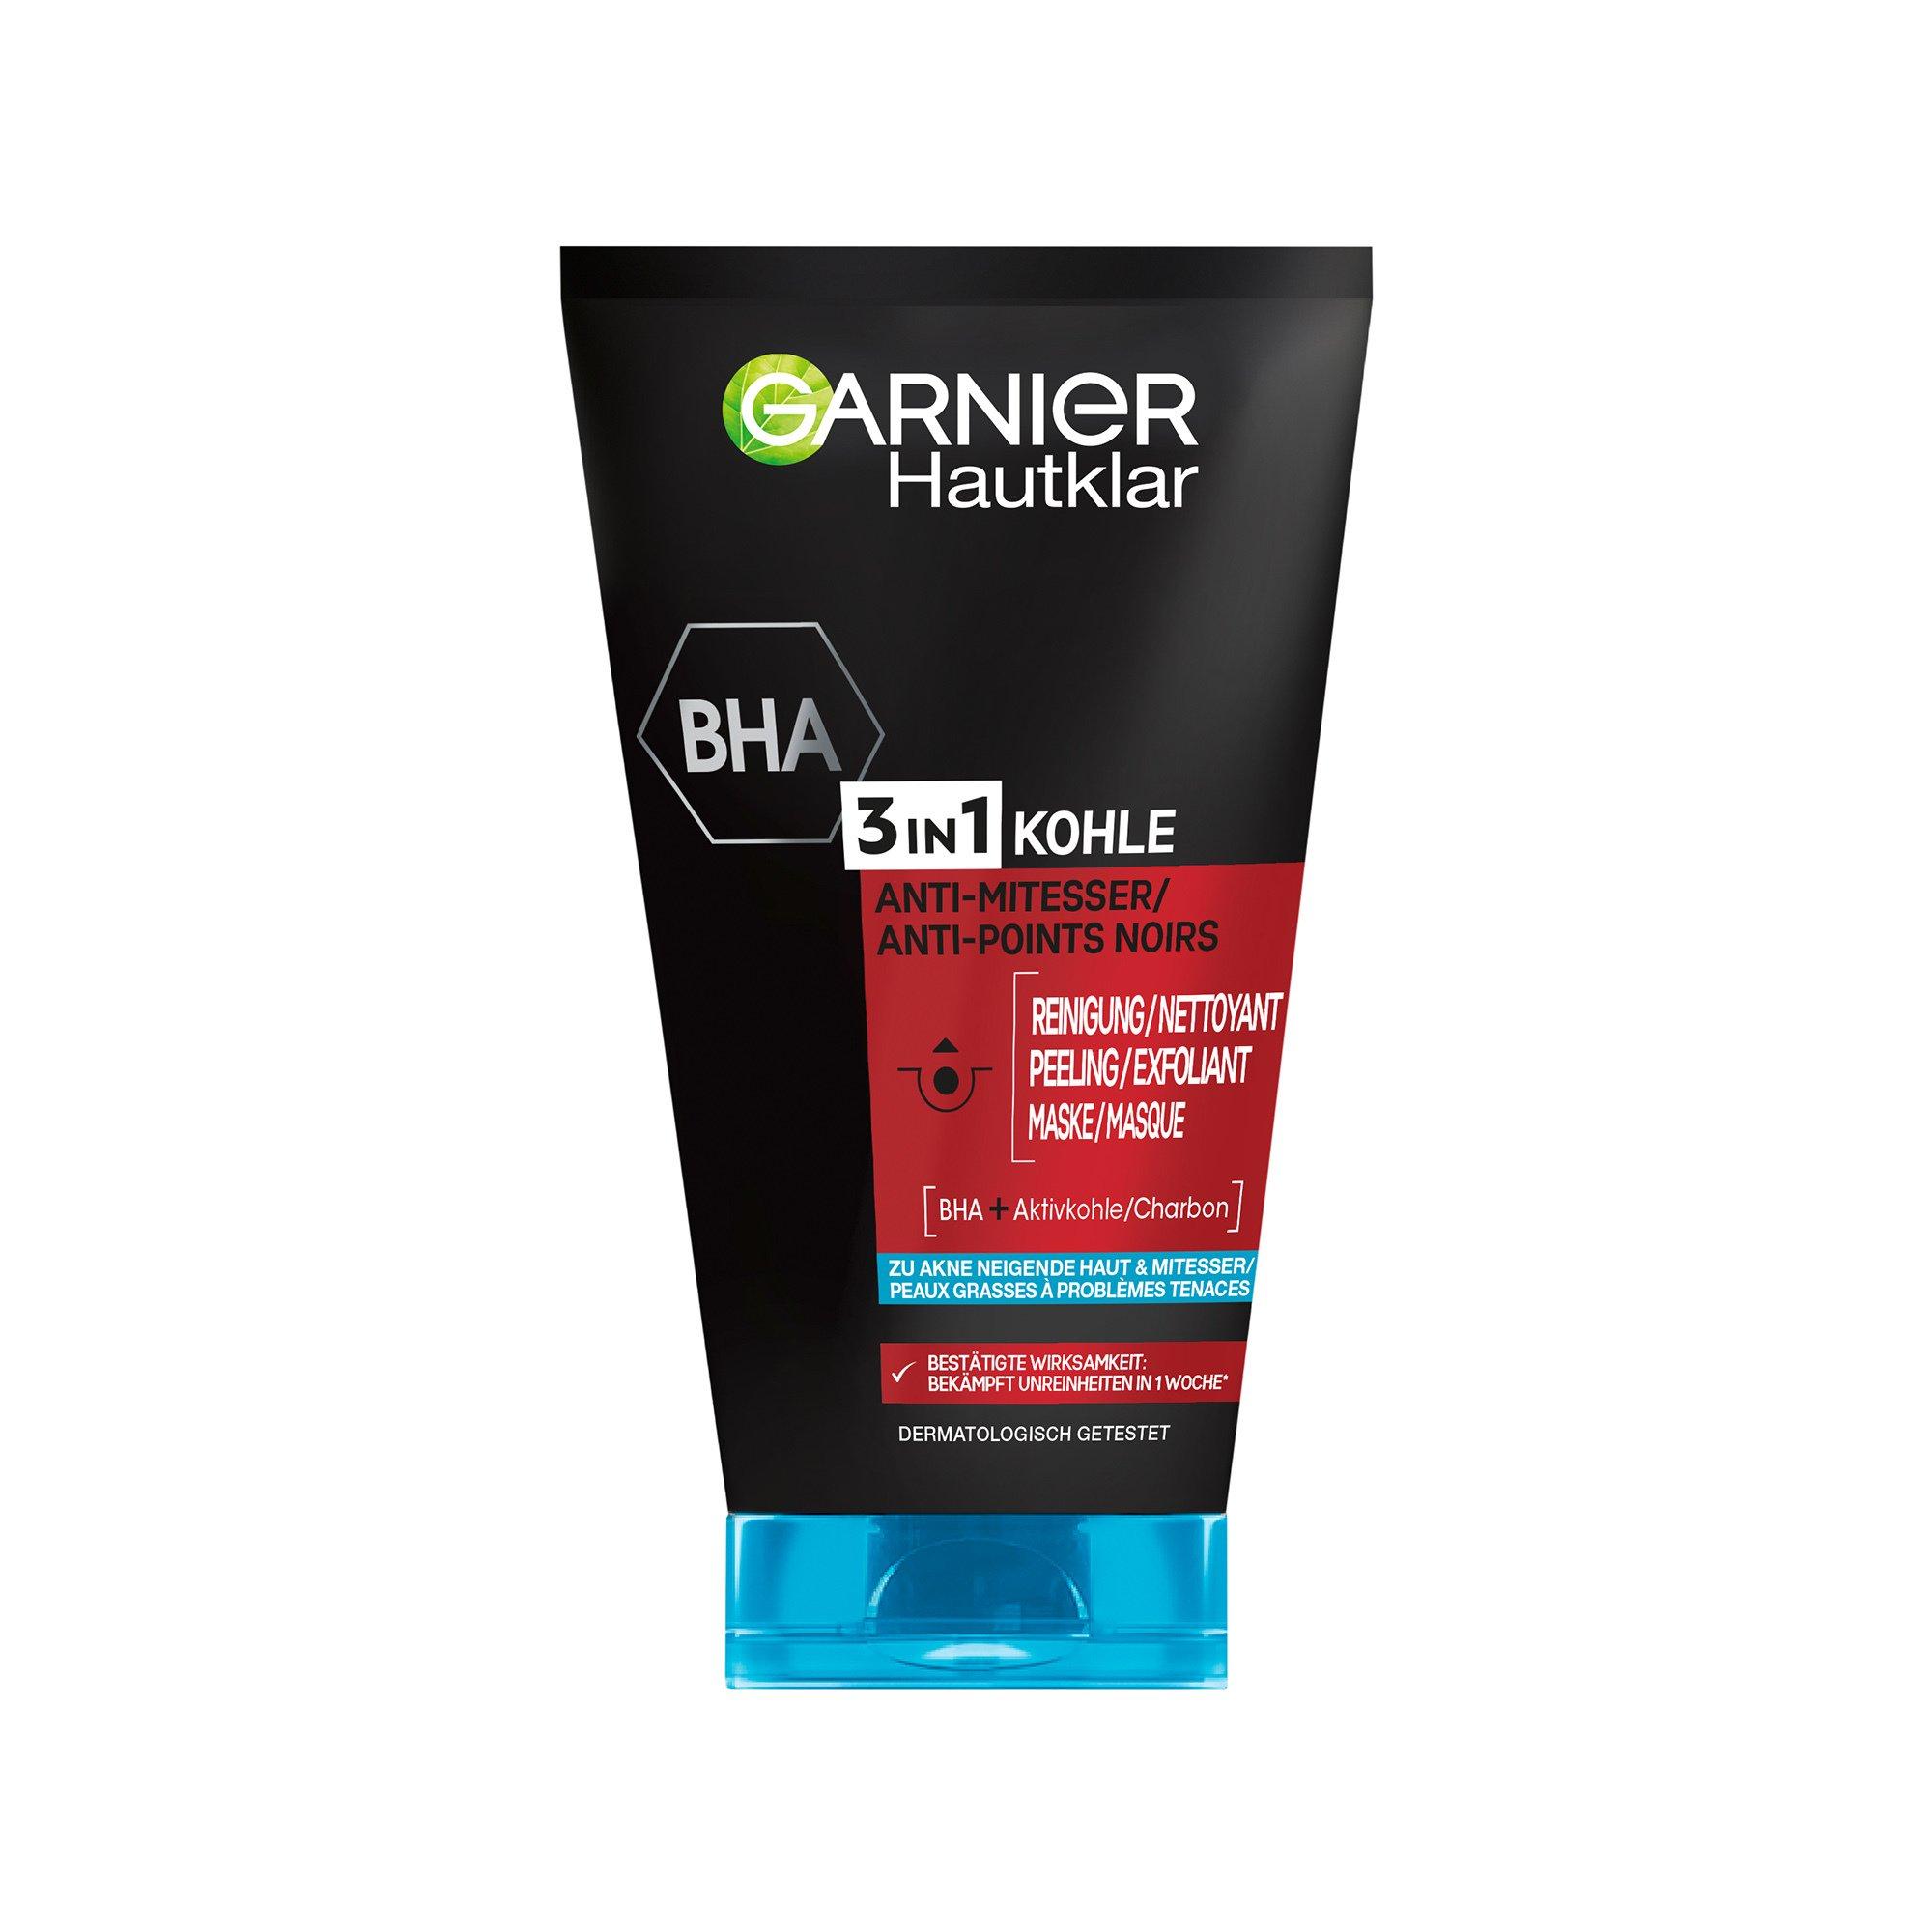 GARNIER Pure active Hautklar 3-in-1 und Reinigung, MANOR online Maske - | kaufen Anti-Mitesser Peeling